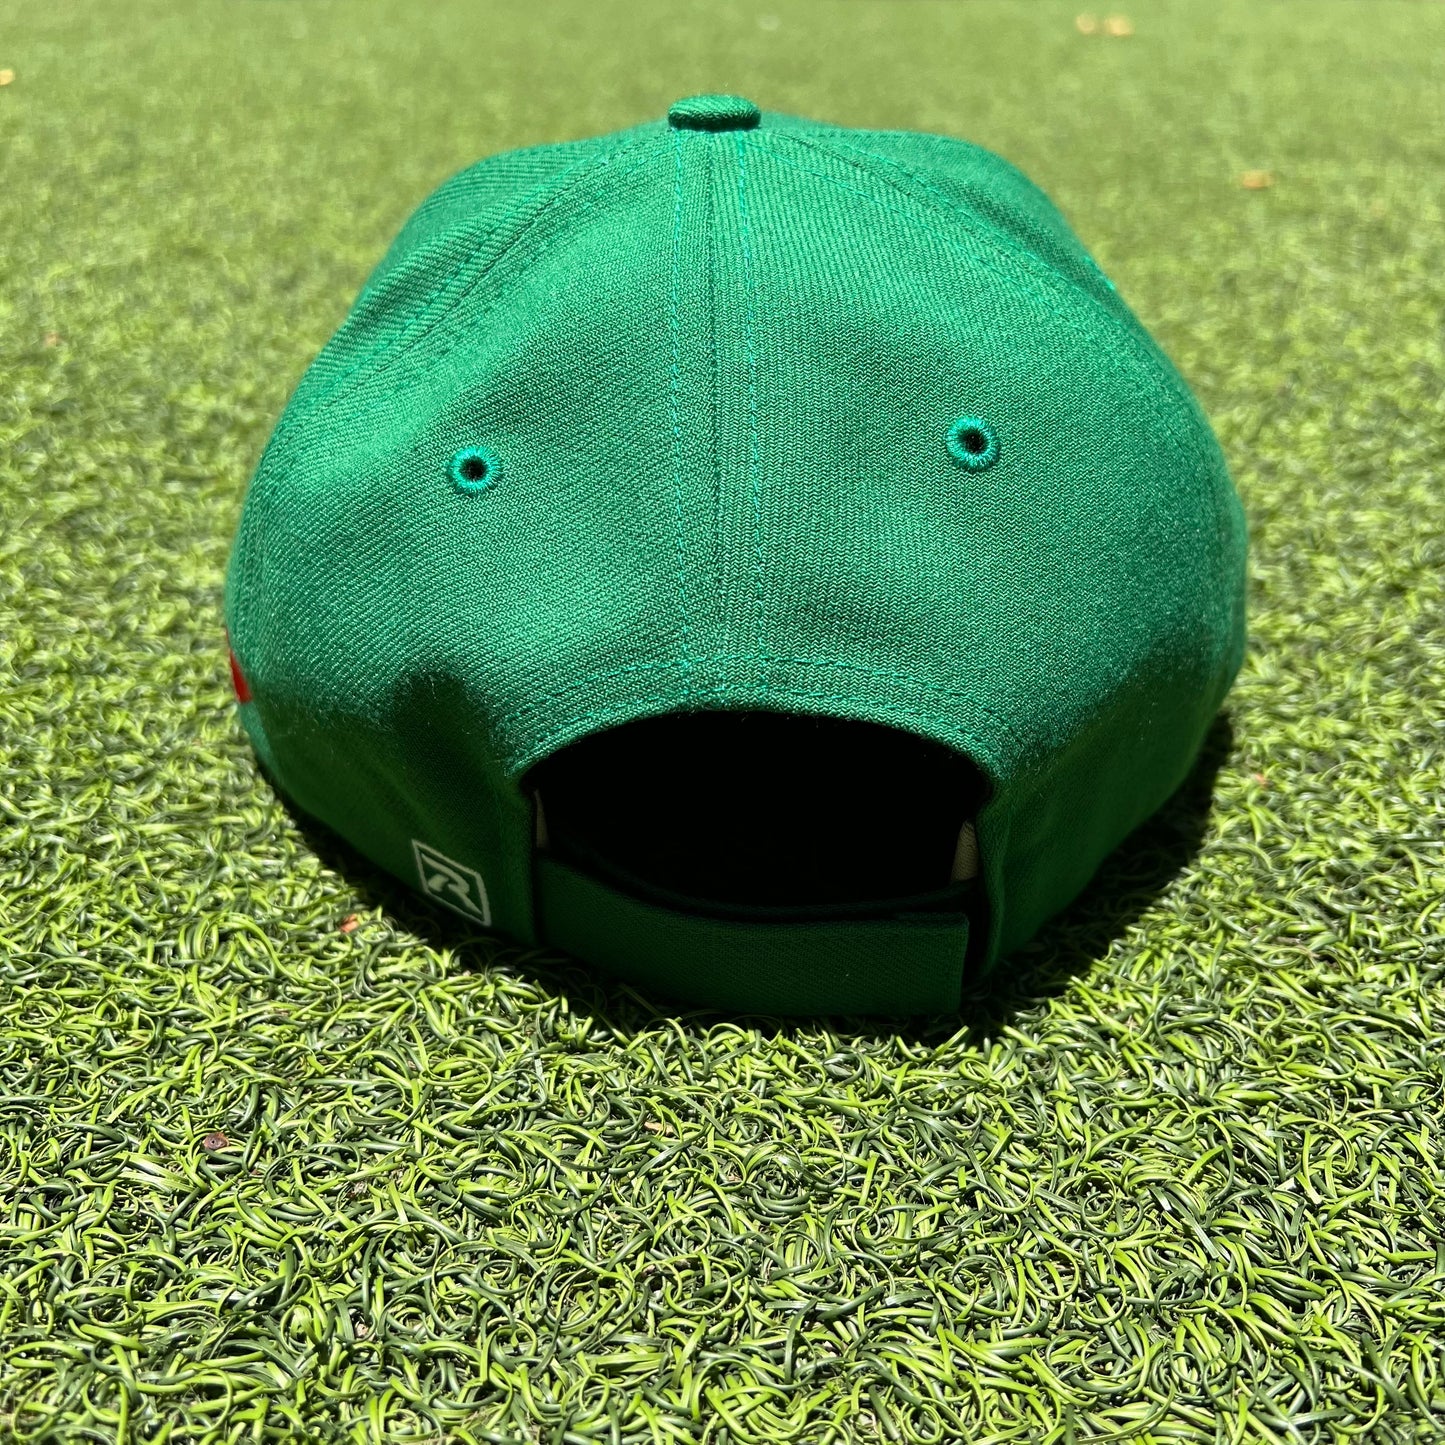 HiLife Baseball Snapback hats